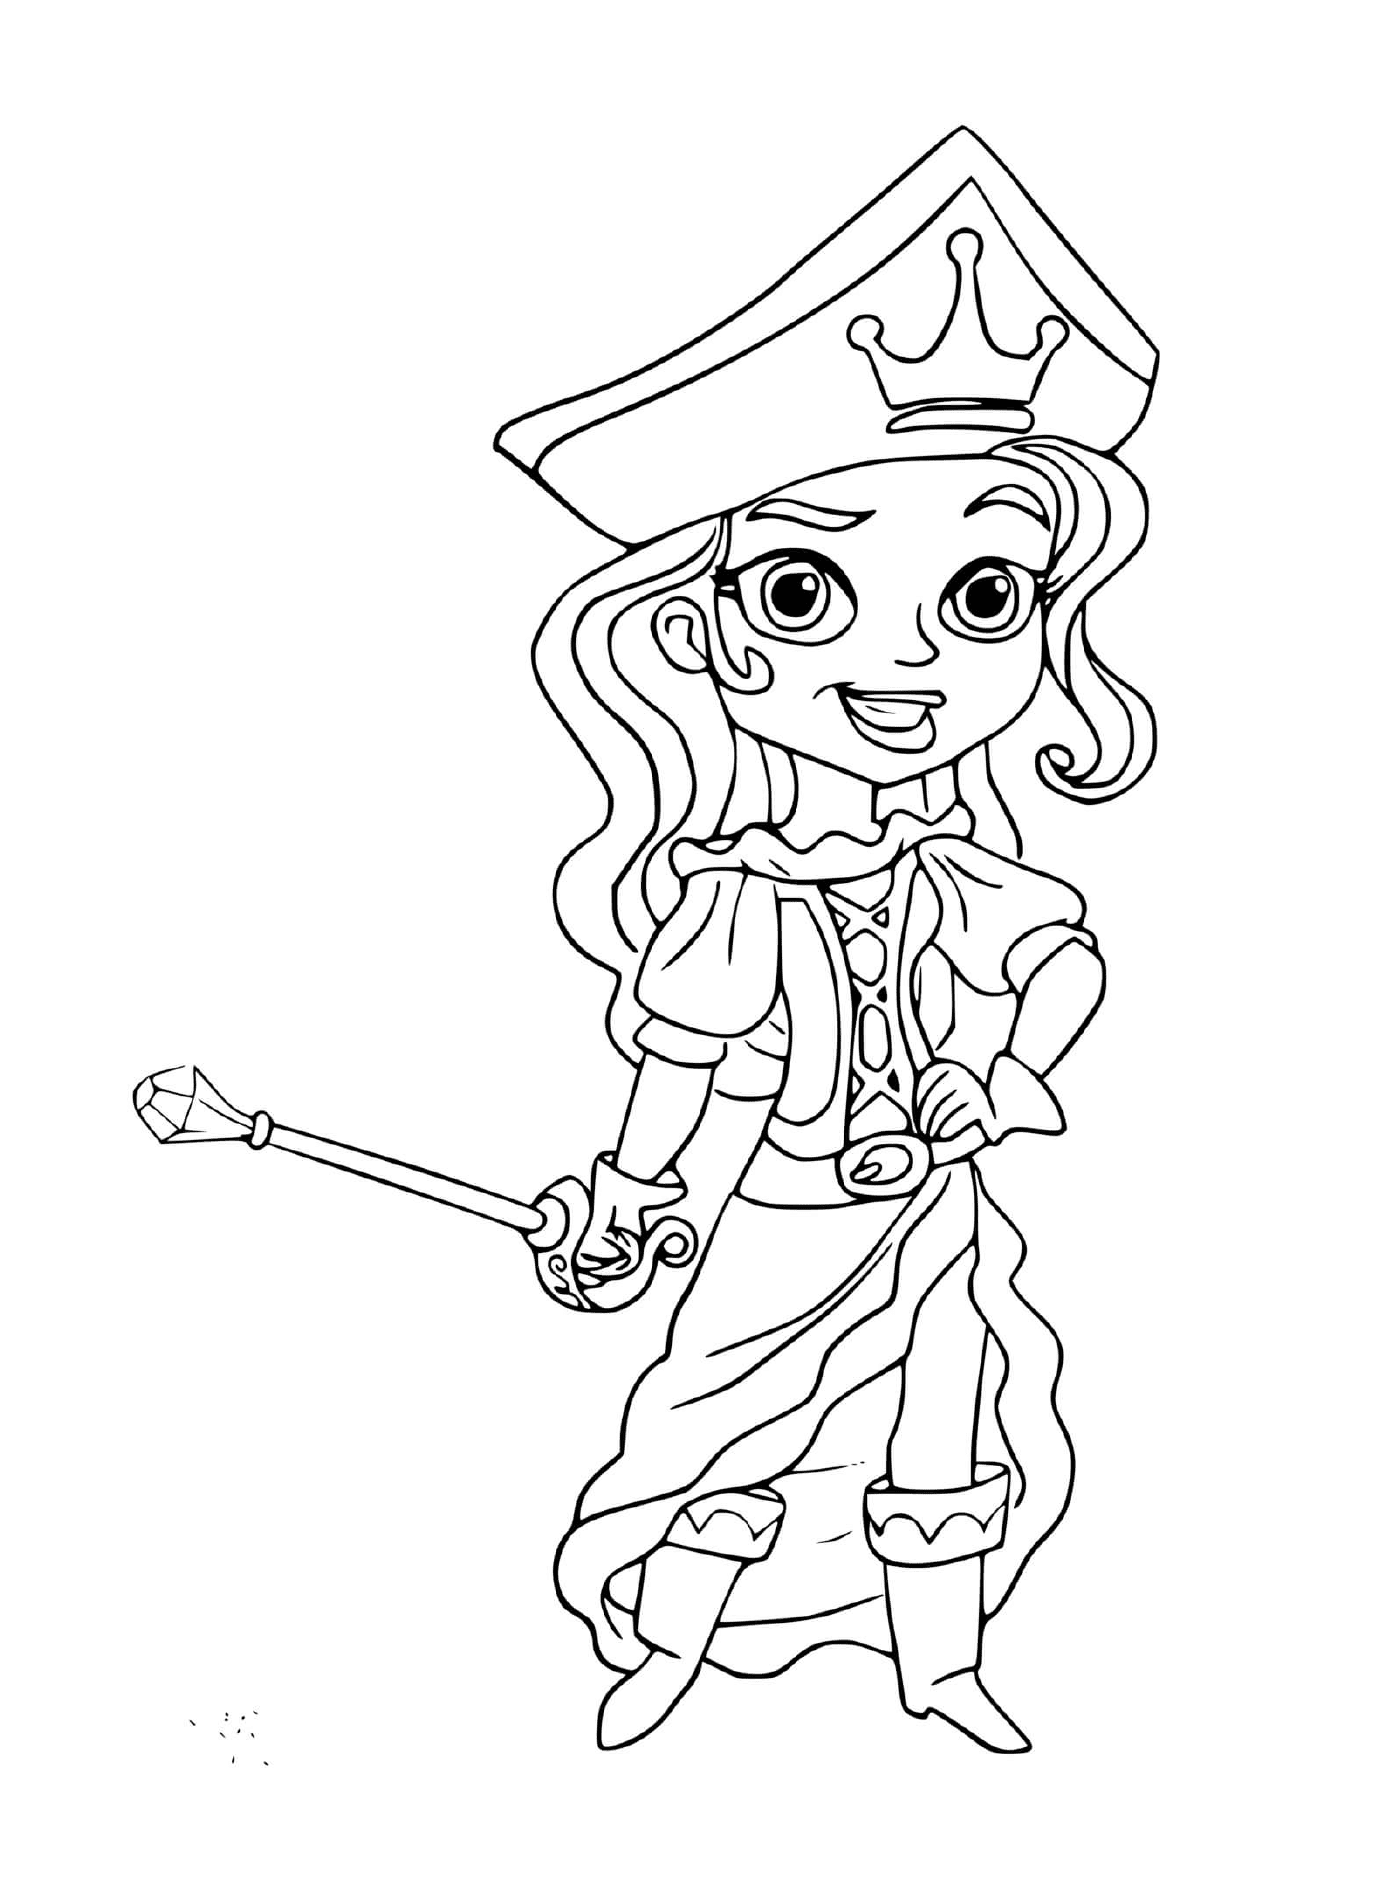  बहादुर तलवार के साथ समुद्री डाकू लड़की 